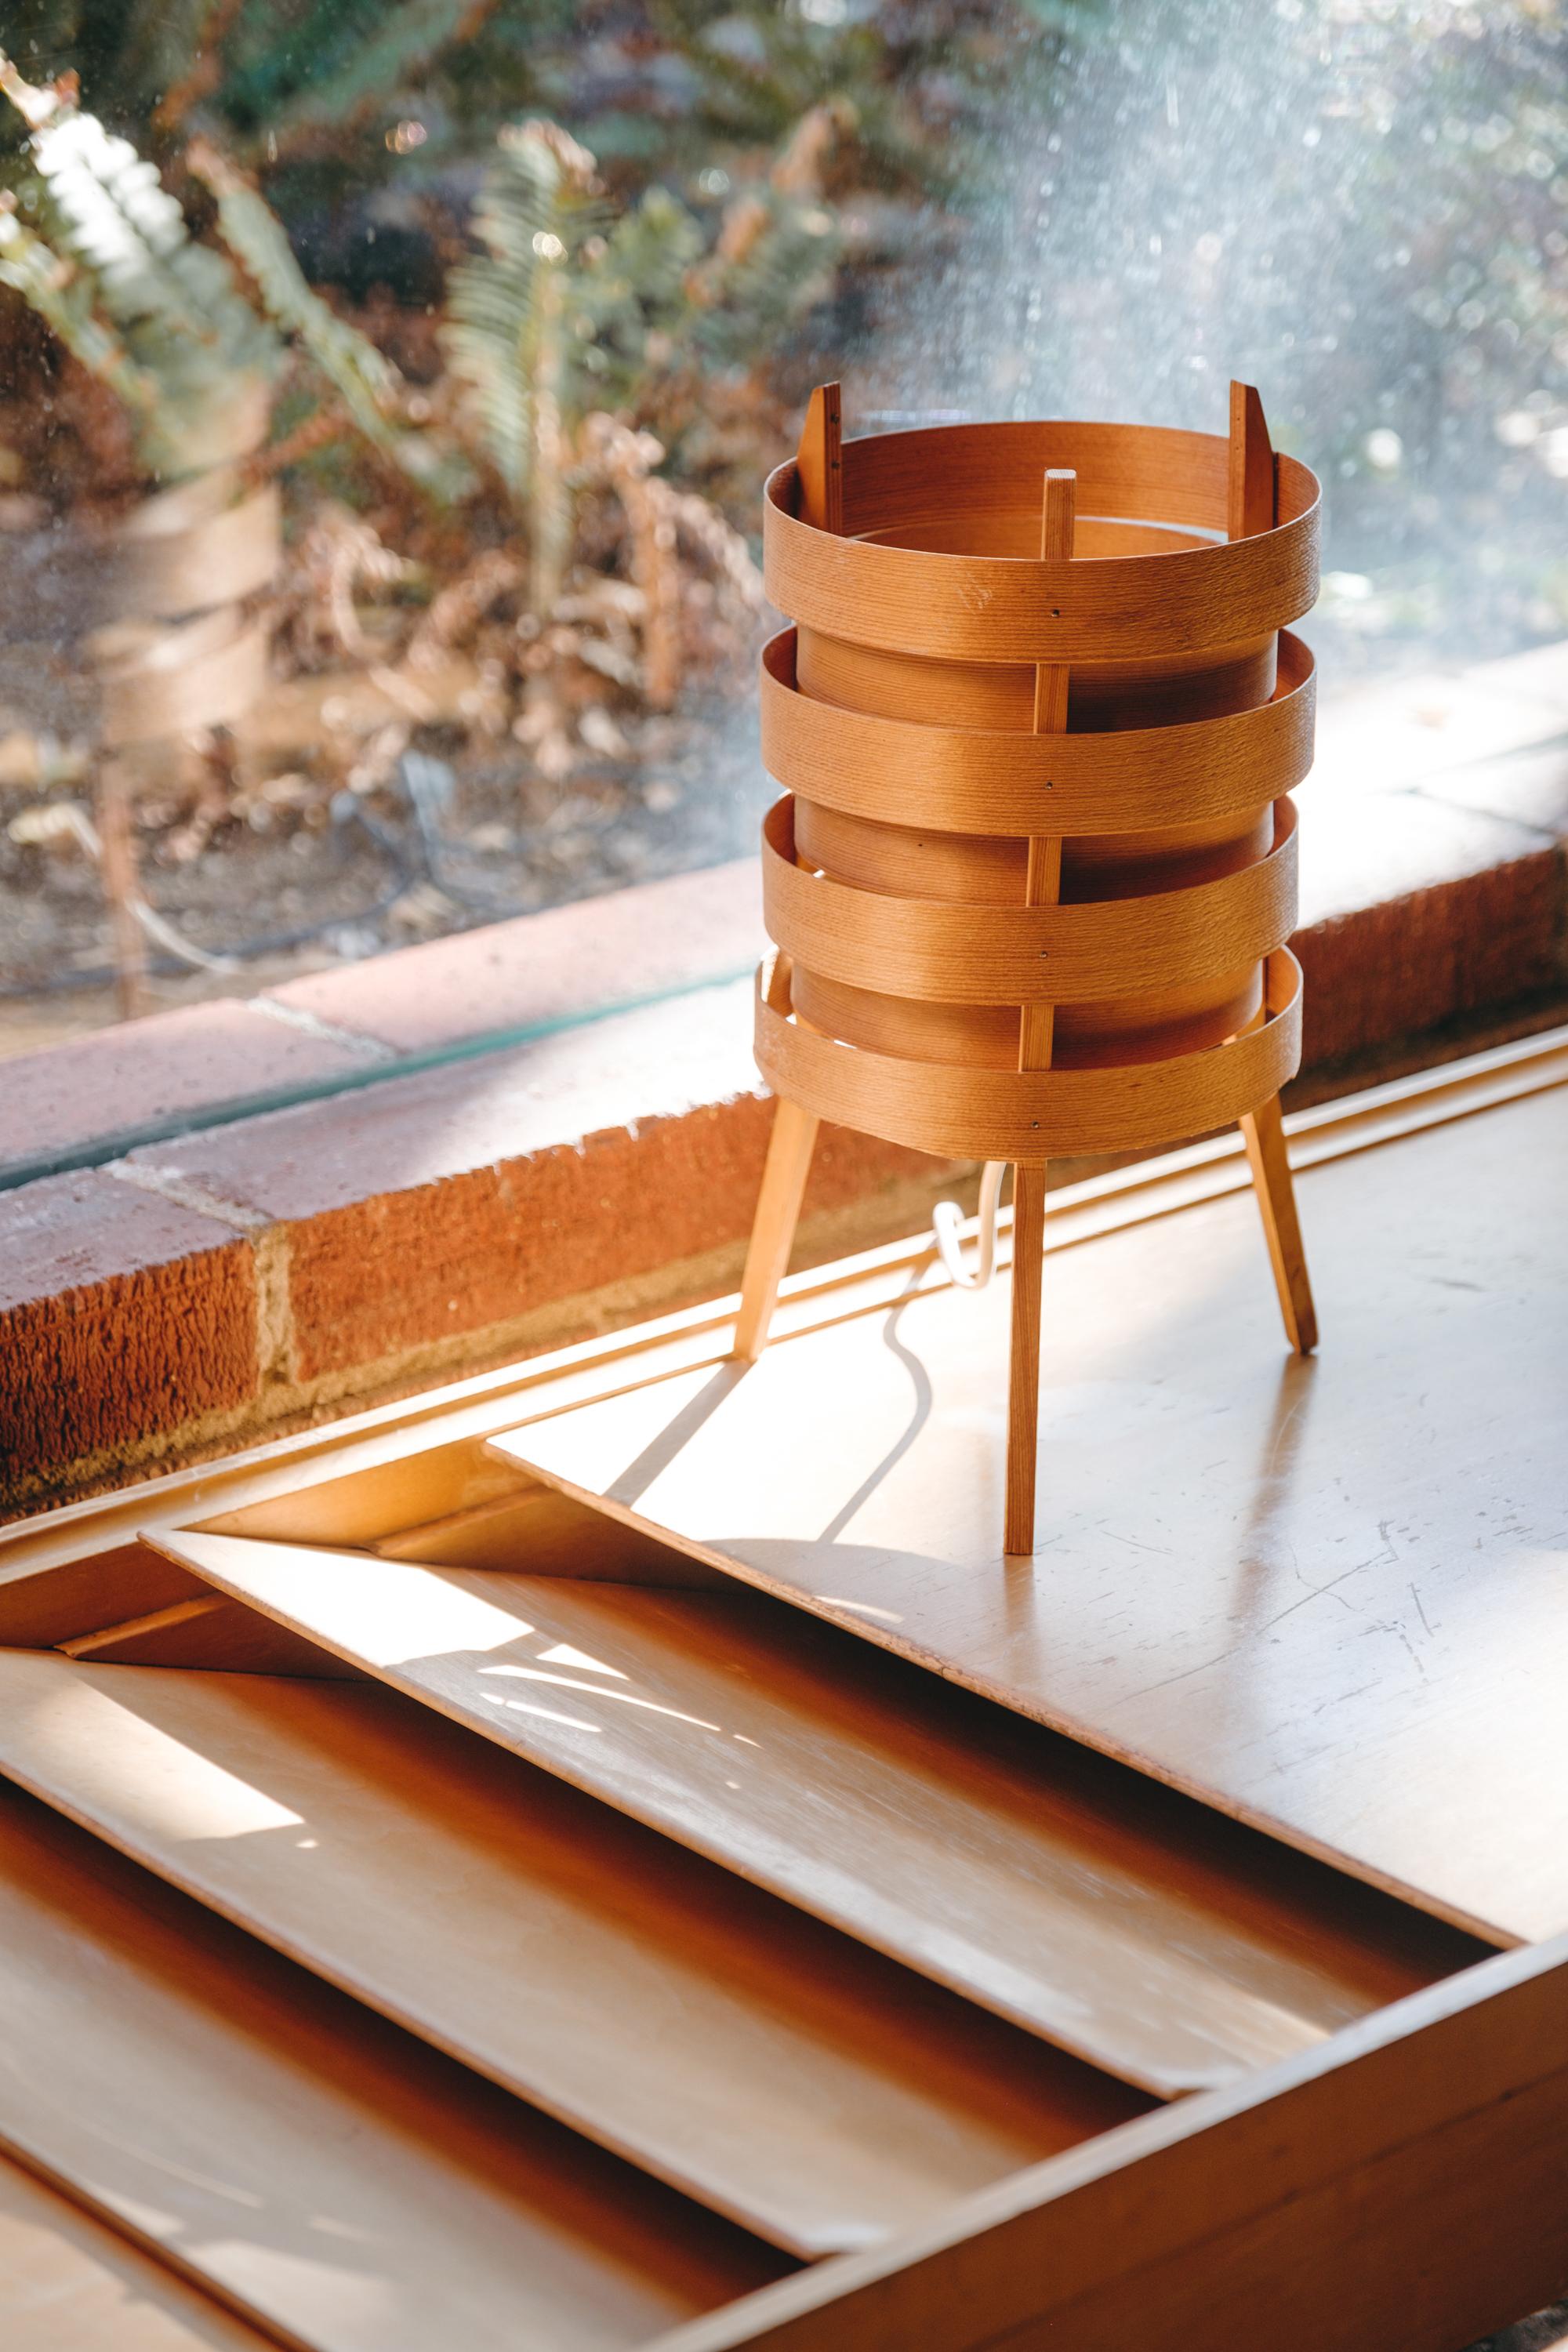 Lampe de table tripode en bois de Hans-Agne Jakobsson des années 1960 pour AB Ellysett. Conçu et produit par Jakobsson à Markaryd, en Suède, et exécuté en bois de courge fin avec une structure de base tripode solide. Une lampe rare et sculpturale